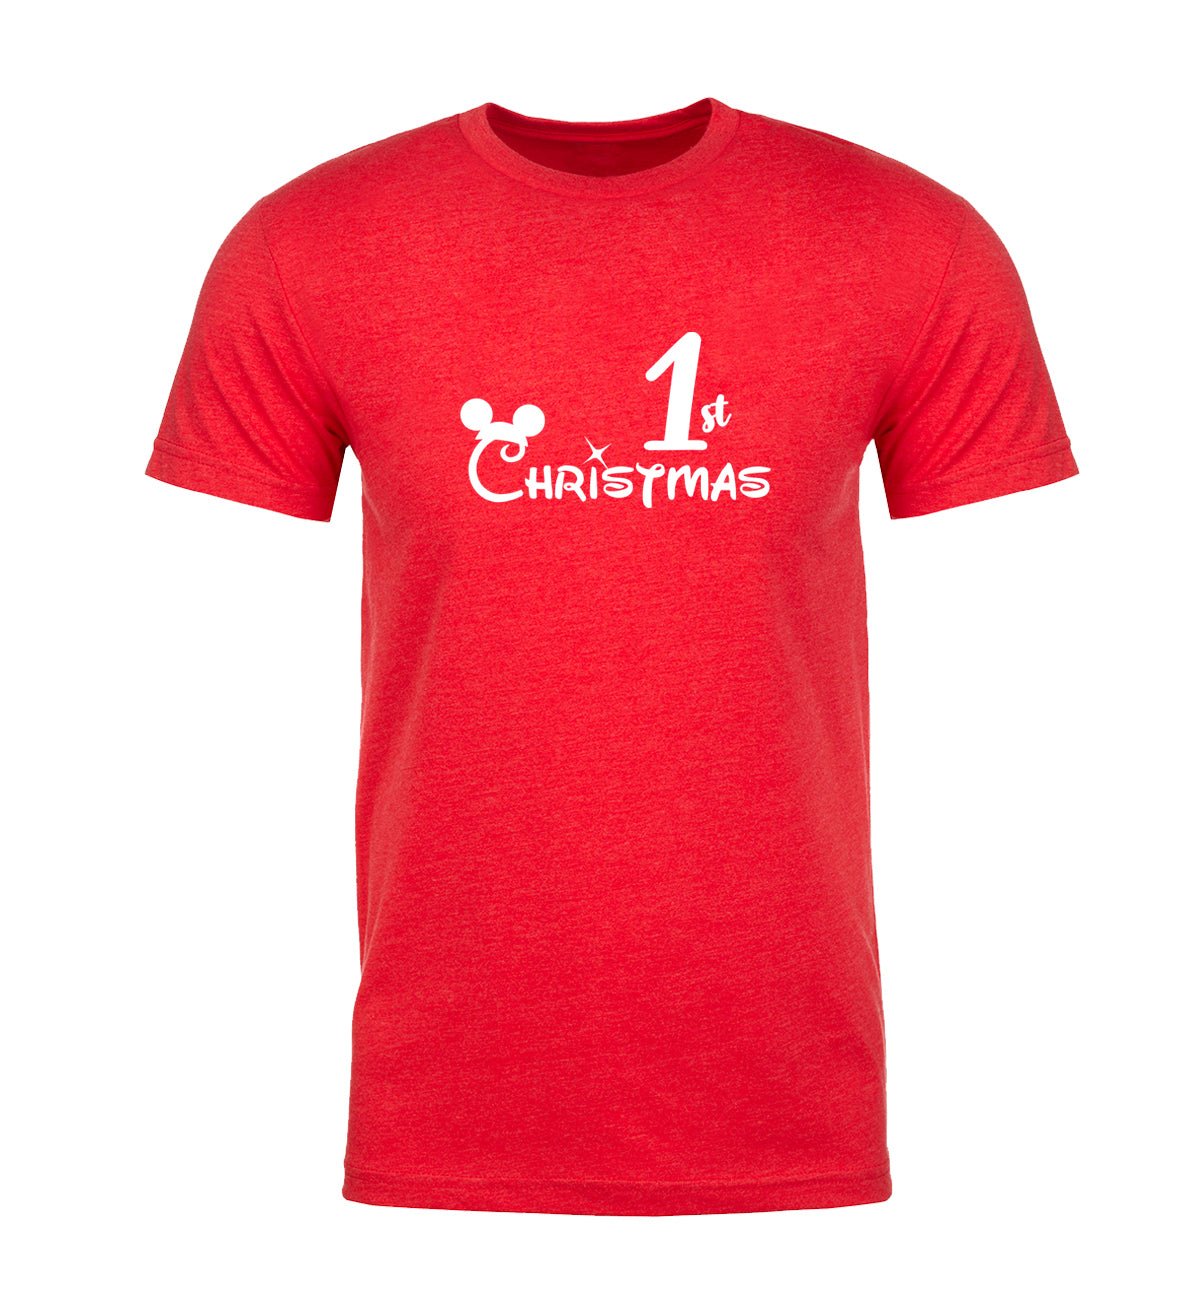 1st Christmas Unisex T Shirts